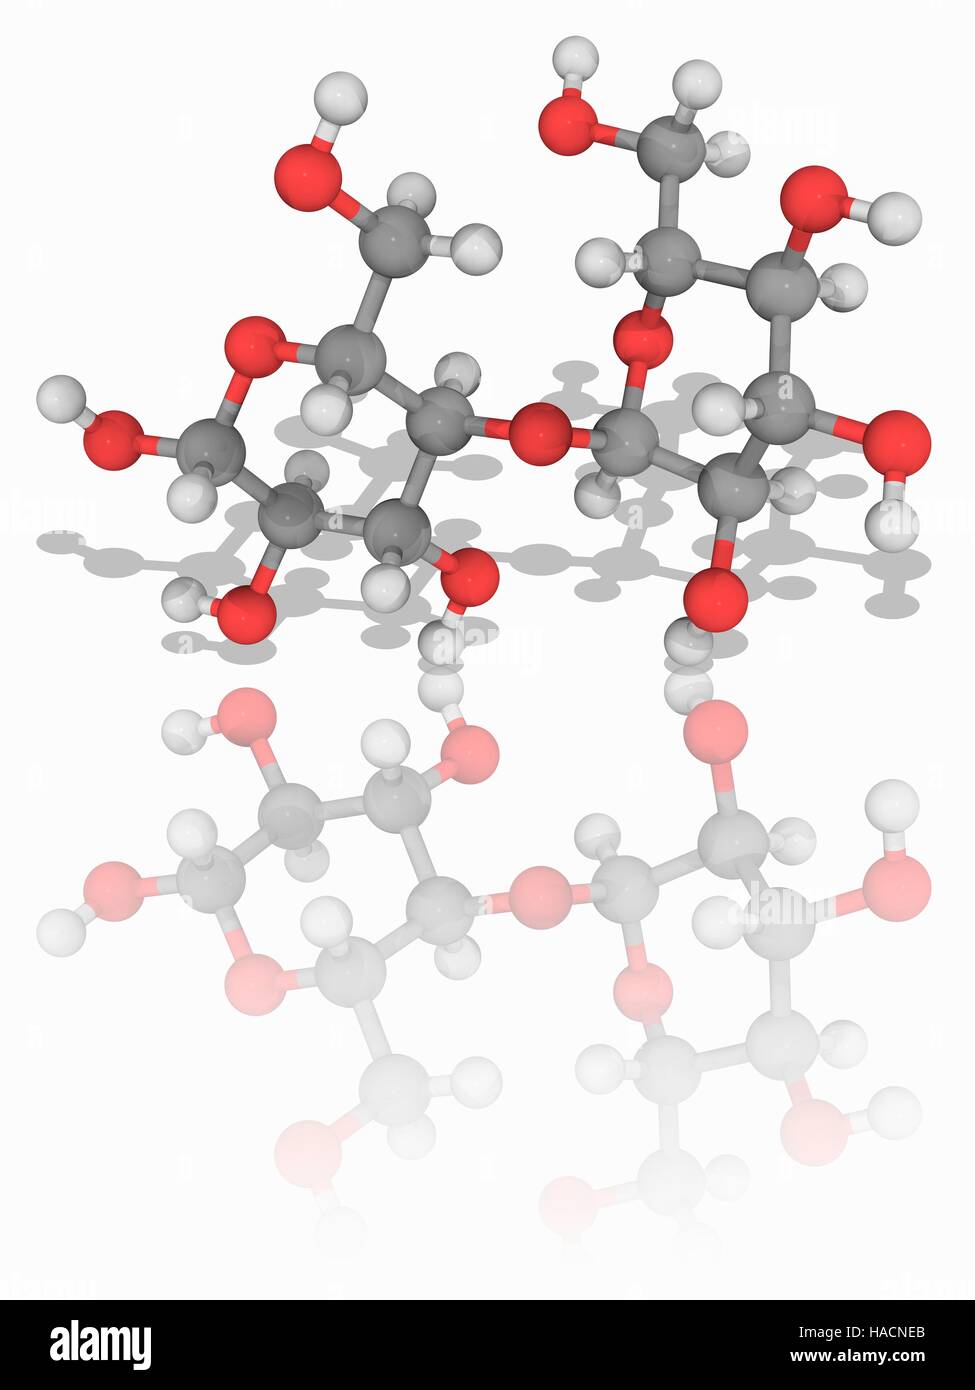 Maltose. Molekülmodell Disaccharid Zucker Maltose (C12. H22. E11), gebildet aus zwei Einheiten der Zucker Glucose. Maltose ist halb so süß wie die Glukose. Atome als Kugeln dargestellt werden und sind farblich gekennzeichnet: Kohlenstoff (grau), Wasserstoff (weiß) und Sauerstoff (rot). Abbildung. Stockfoto